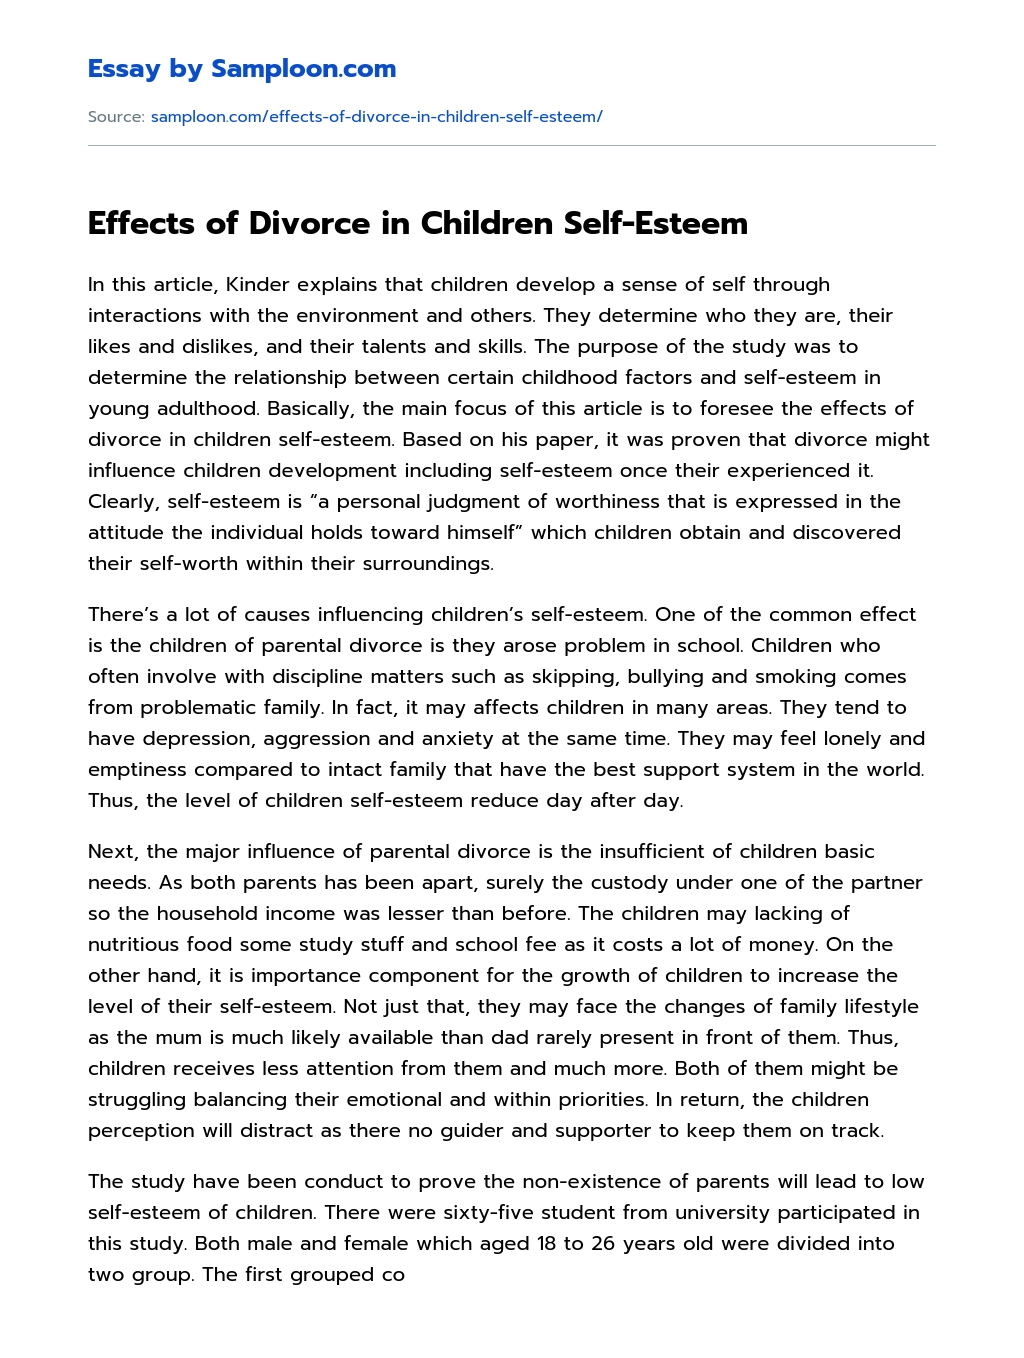 Effects of Divorce in Children Self-Esteem essay